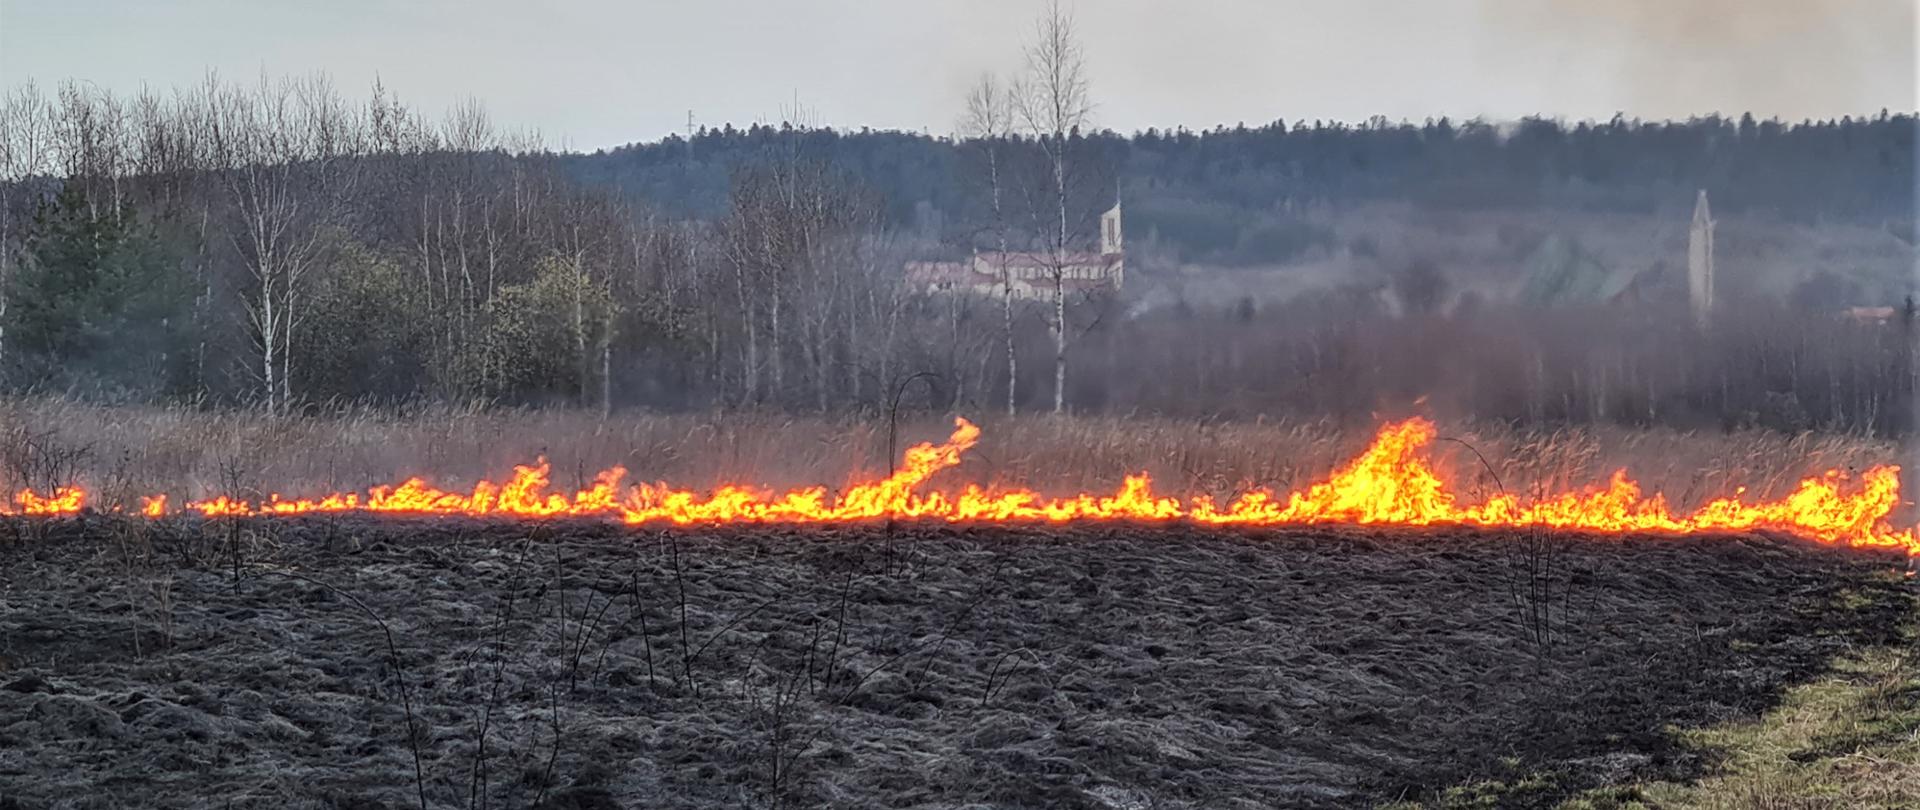 Zdjęcie przedstawia pożar trawy na nieużytkach rolnych. Wędrująca lina ognia, a za nią wypalona trawa. 